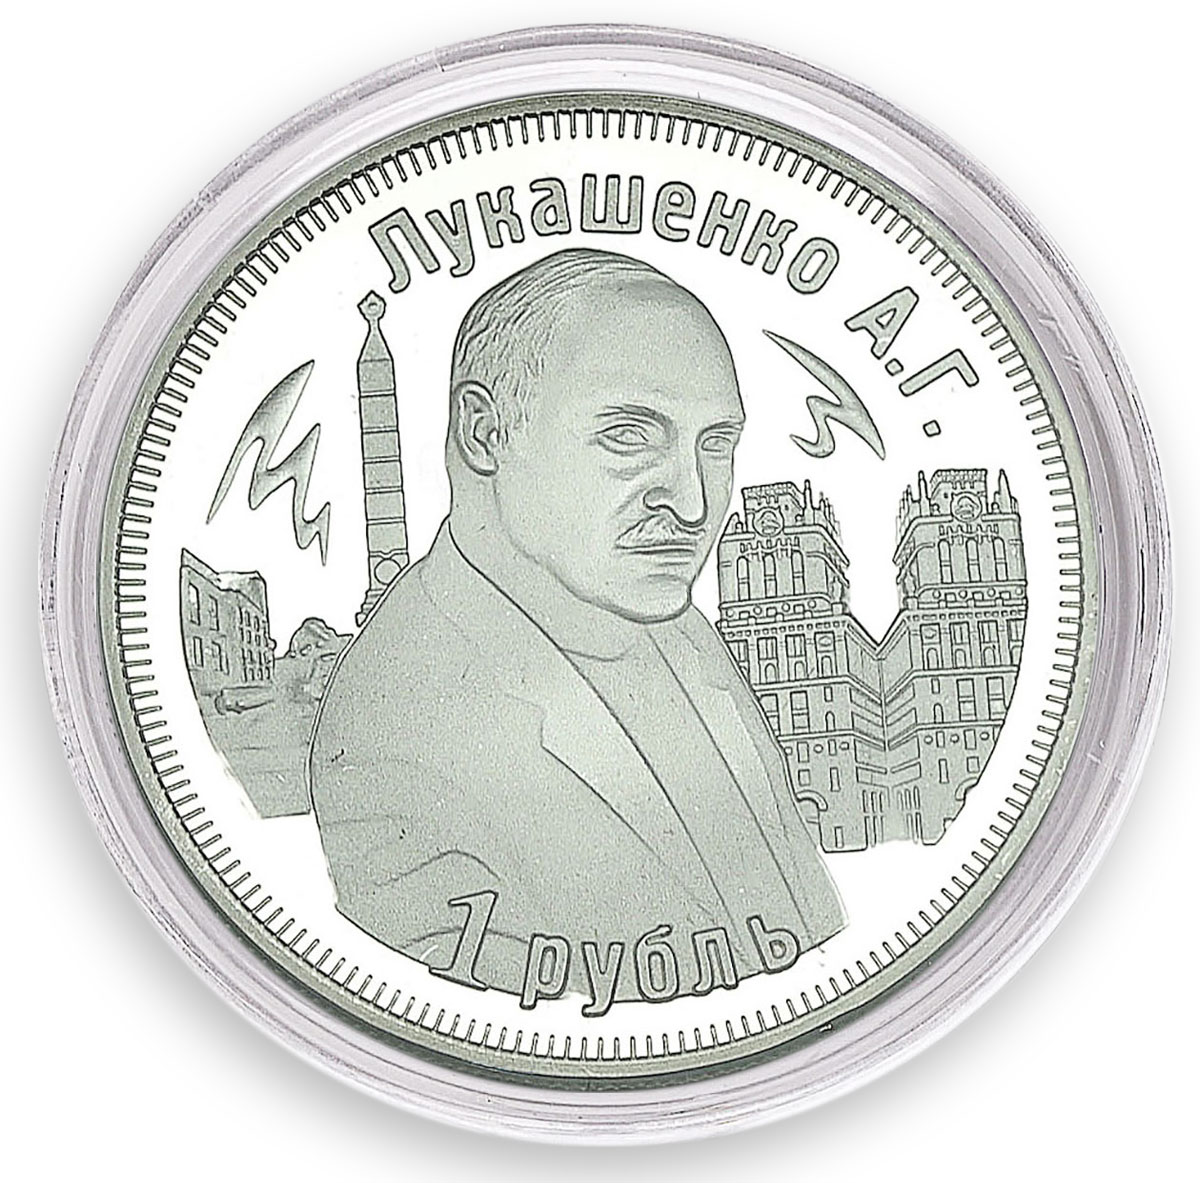 Alexandr Lukashenko, 1 Ruble, 3 Years of The Customs Union, 2013, Token